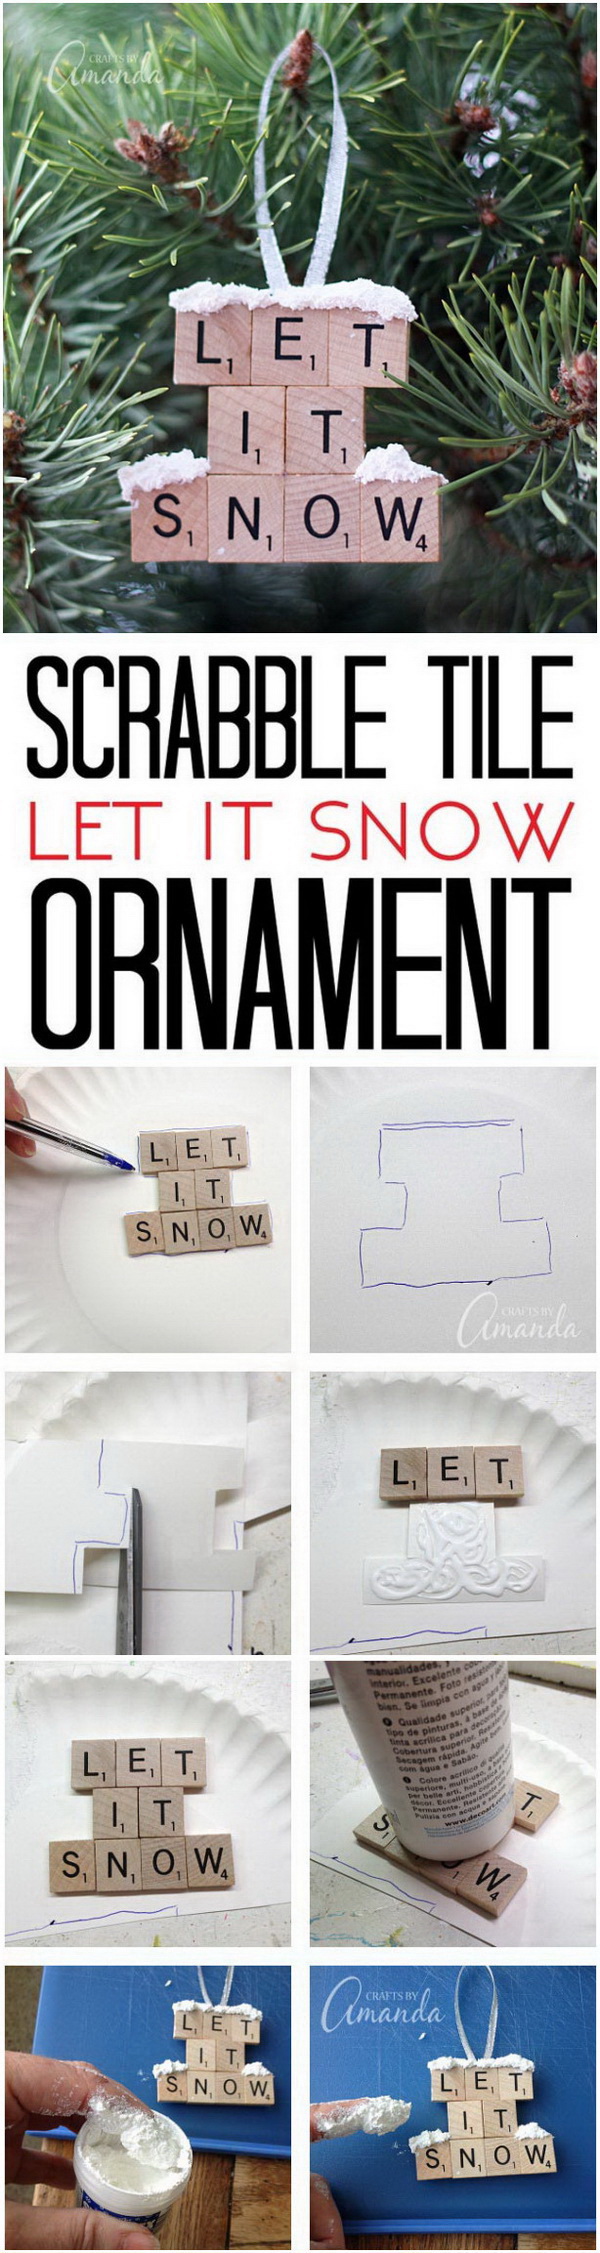 Let It Snow: Scrabble Tile Ornaments. 